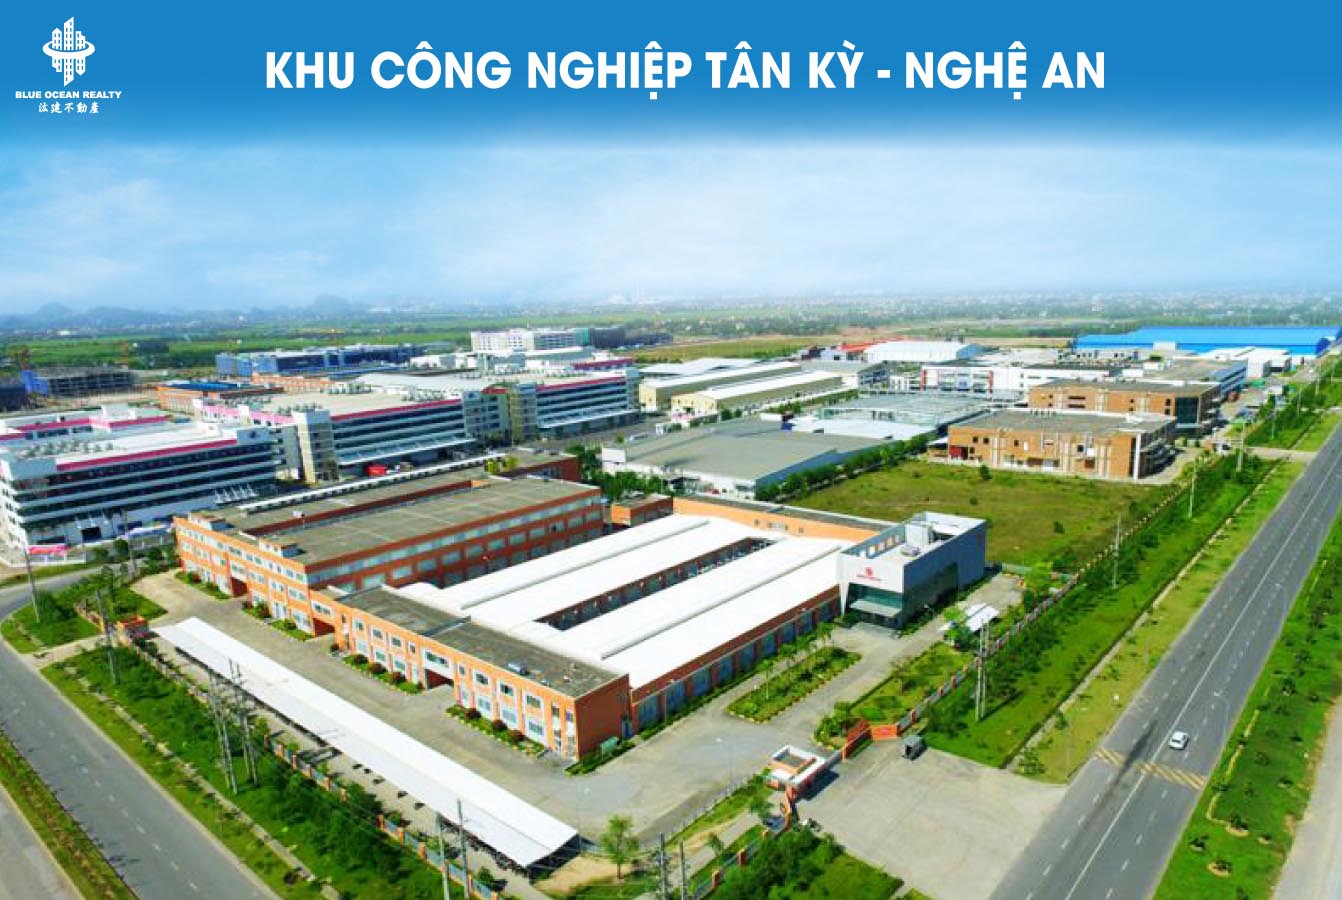 Khu công nghiệp (KCN) Tân Kỳ - Nghệ An